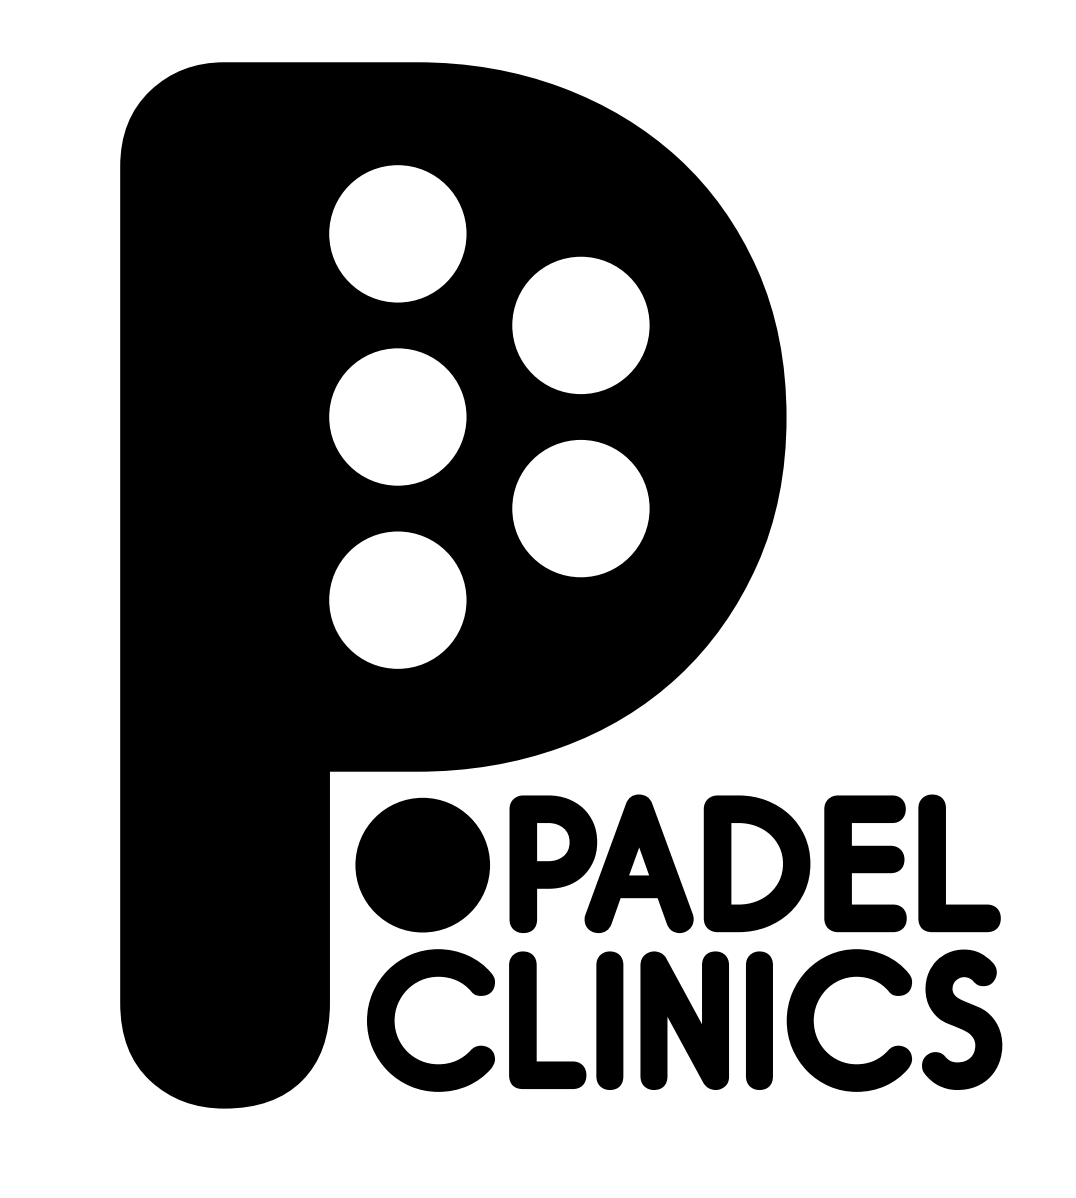 Padel-clinics